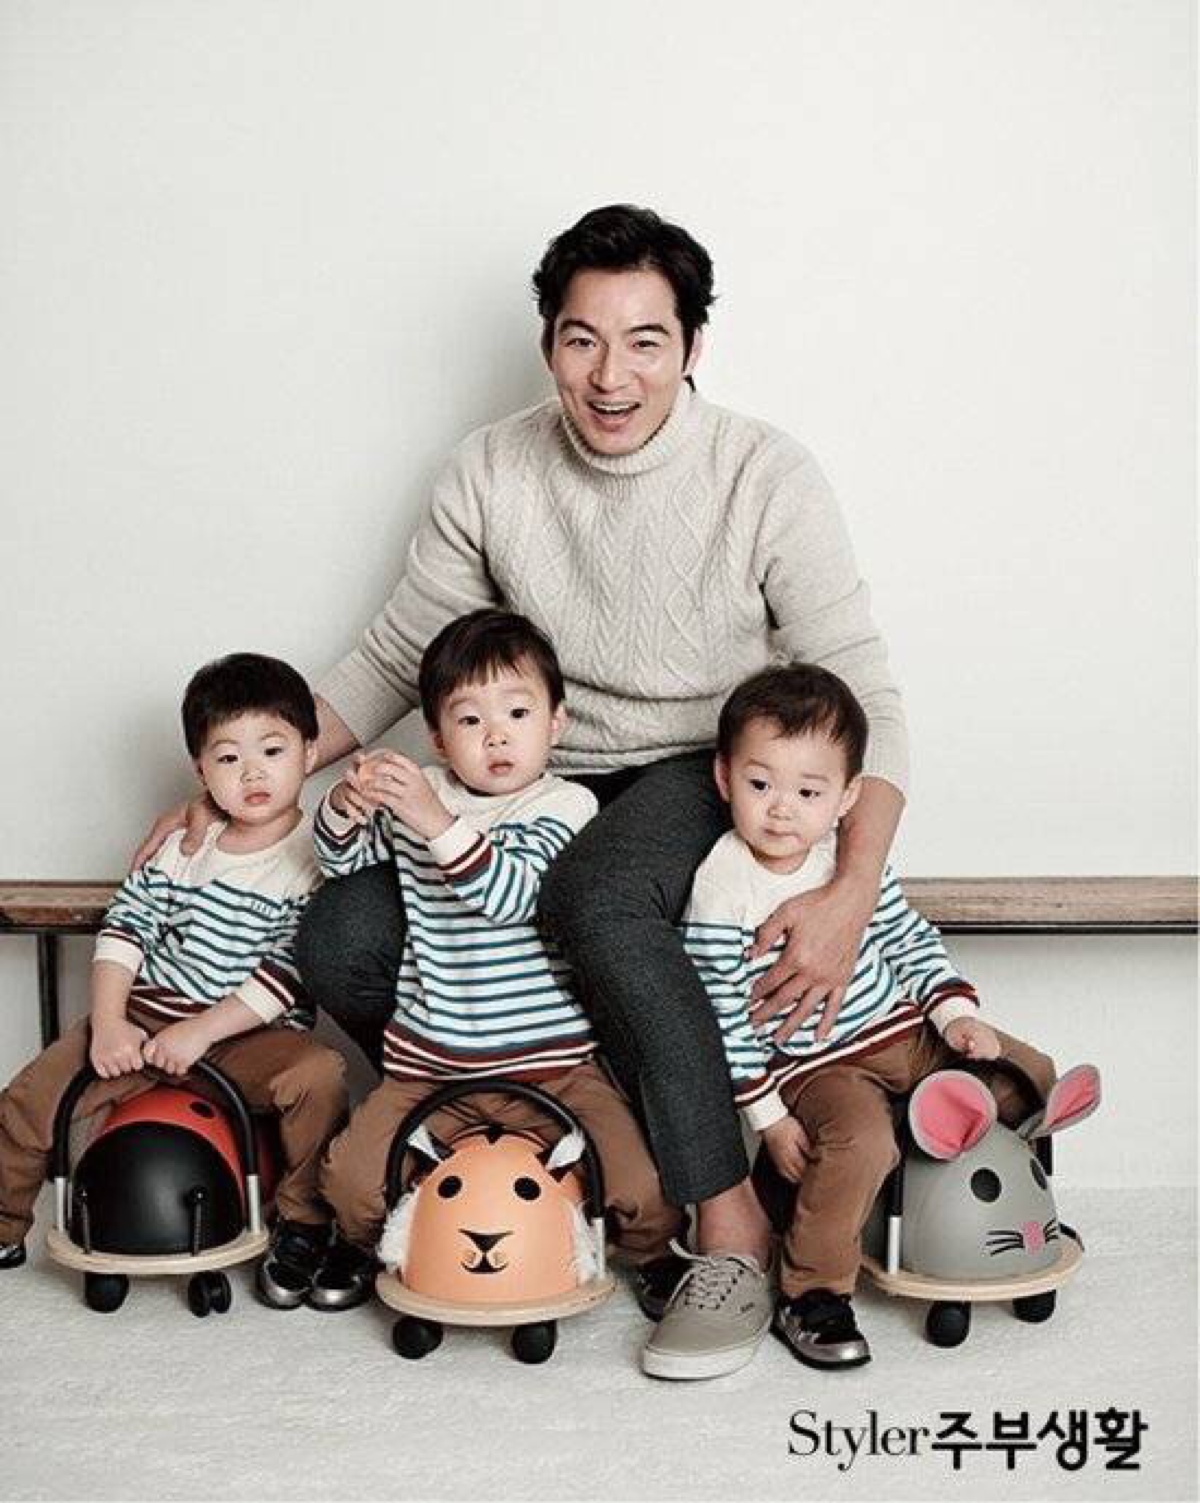 宋一国带着三胞胎儿子大韩,民国,万岁三人参加#超人回来了,三胞胎真